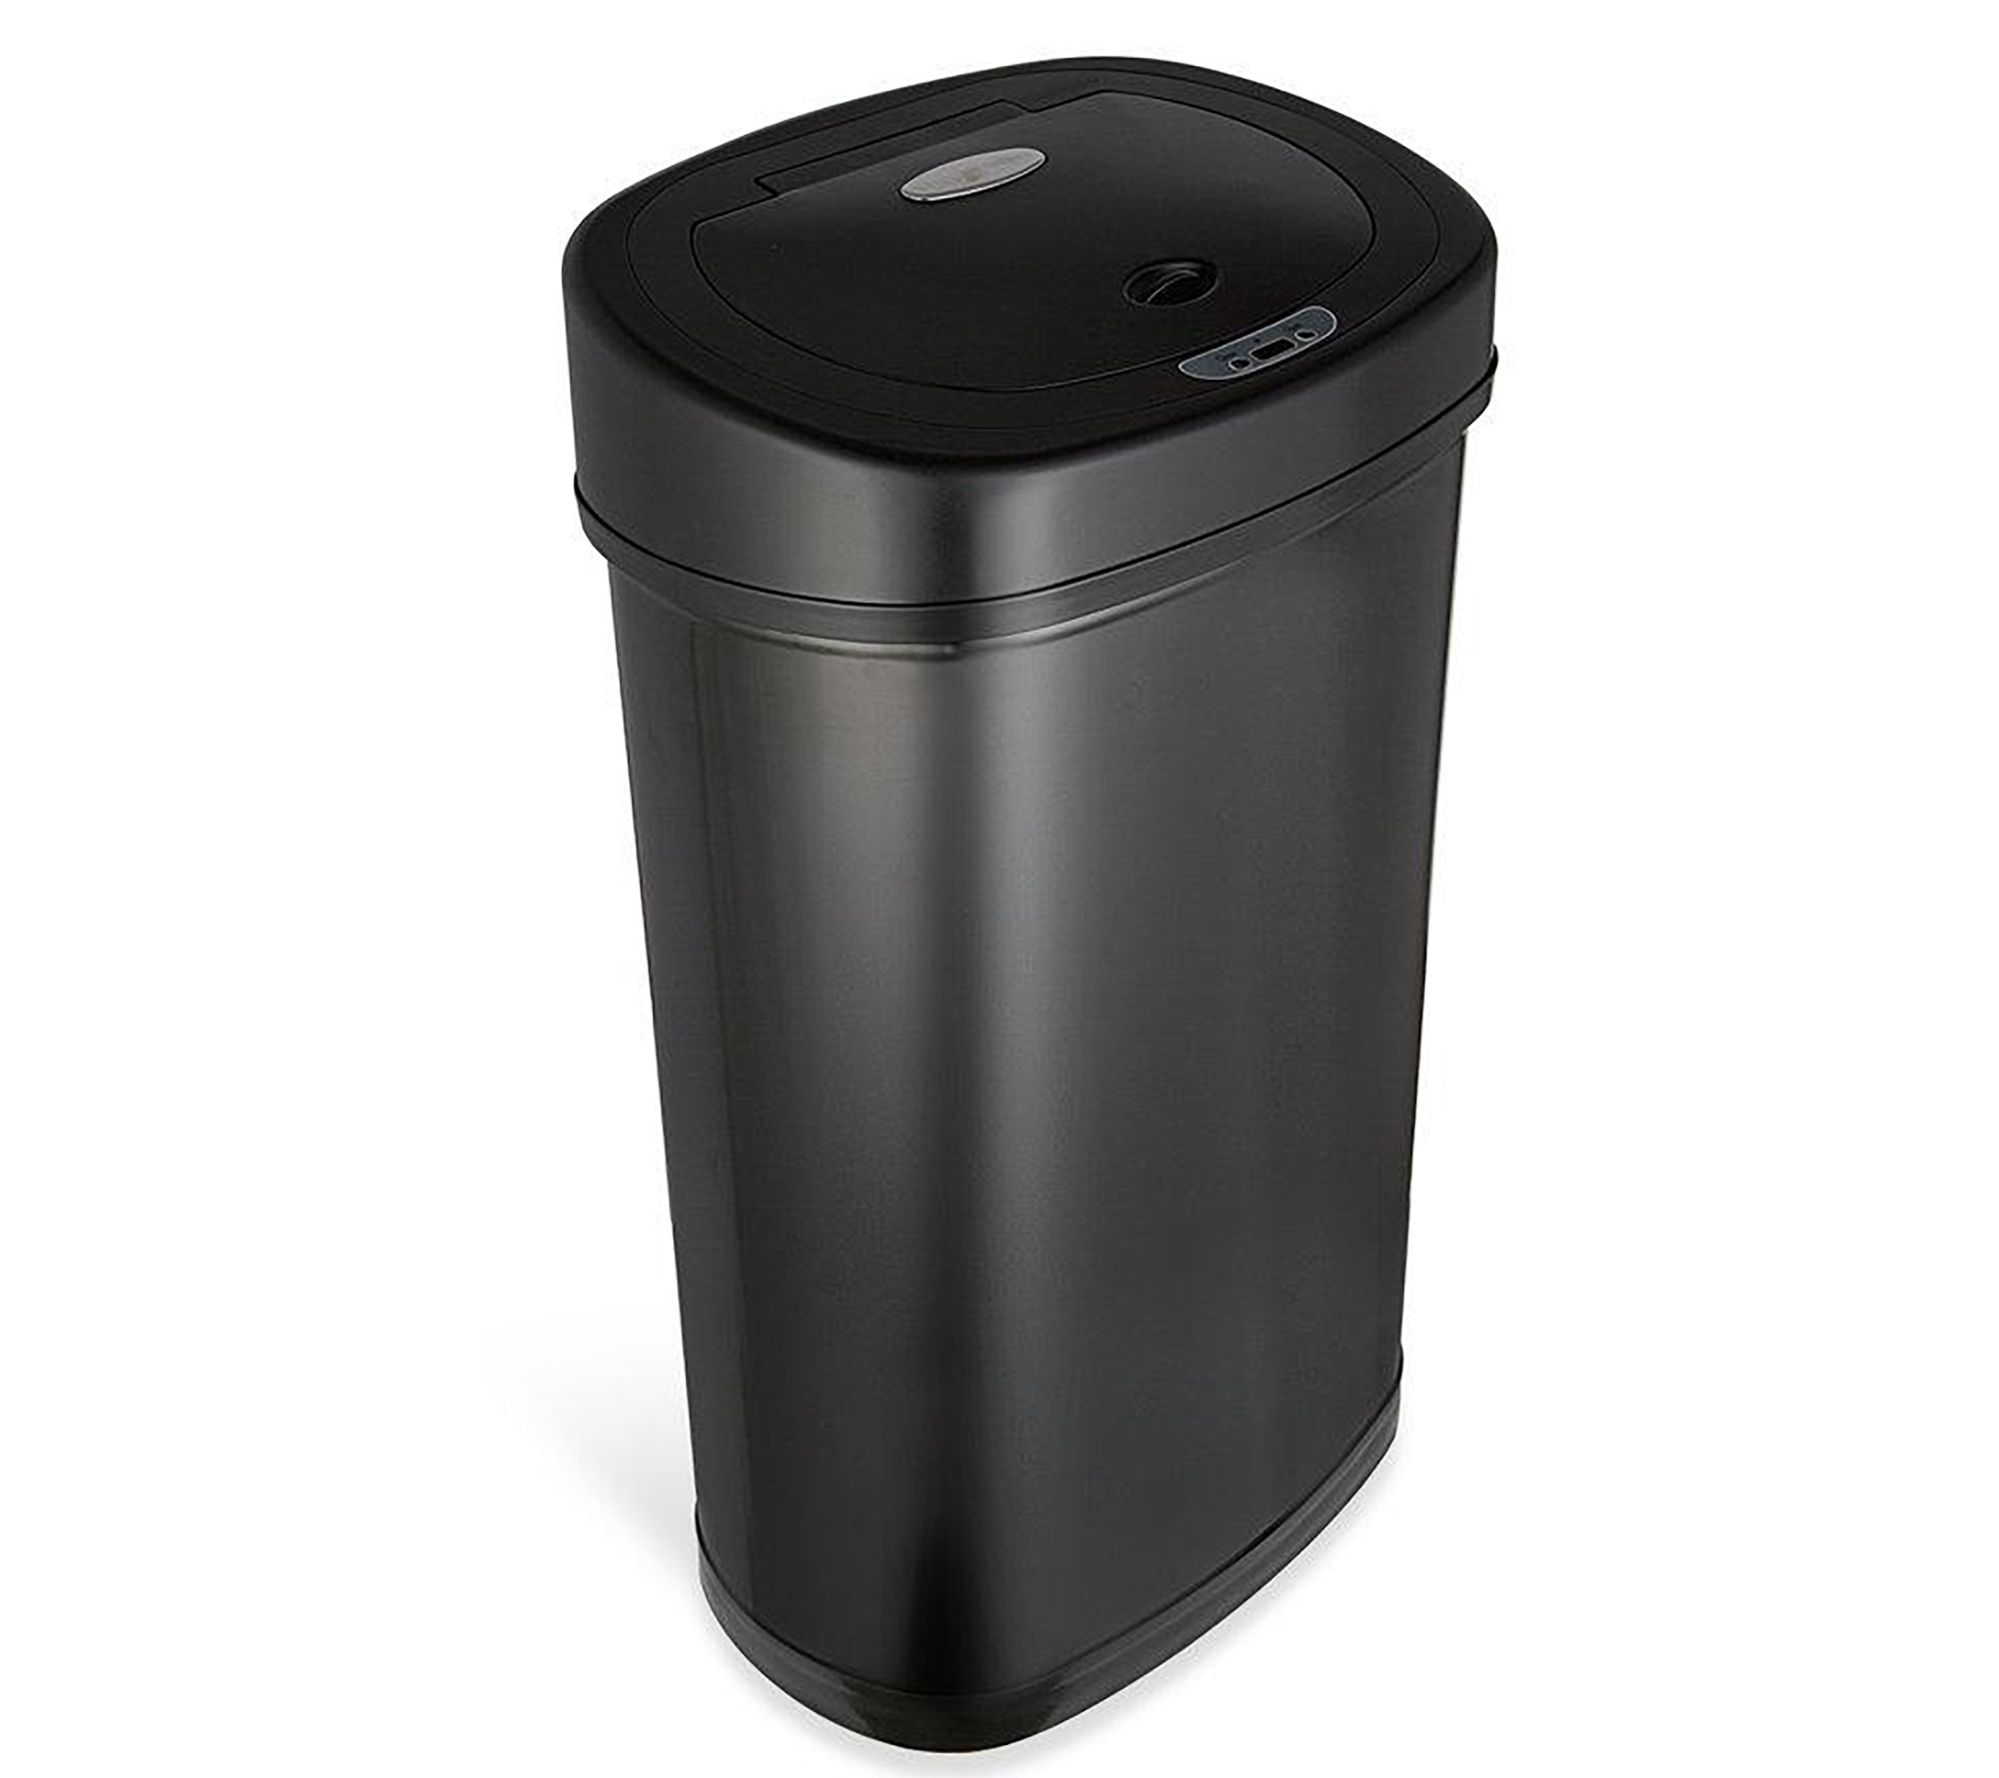 Hanover 12-Liter / 3.2-Gallon Trash Can with Sensor Lid